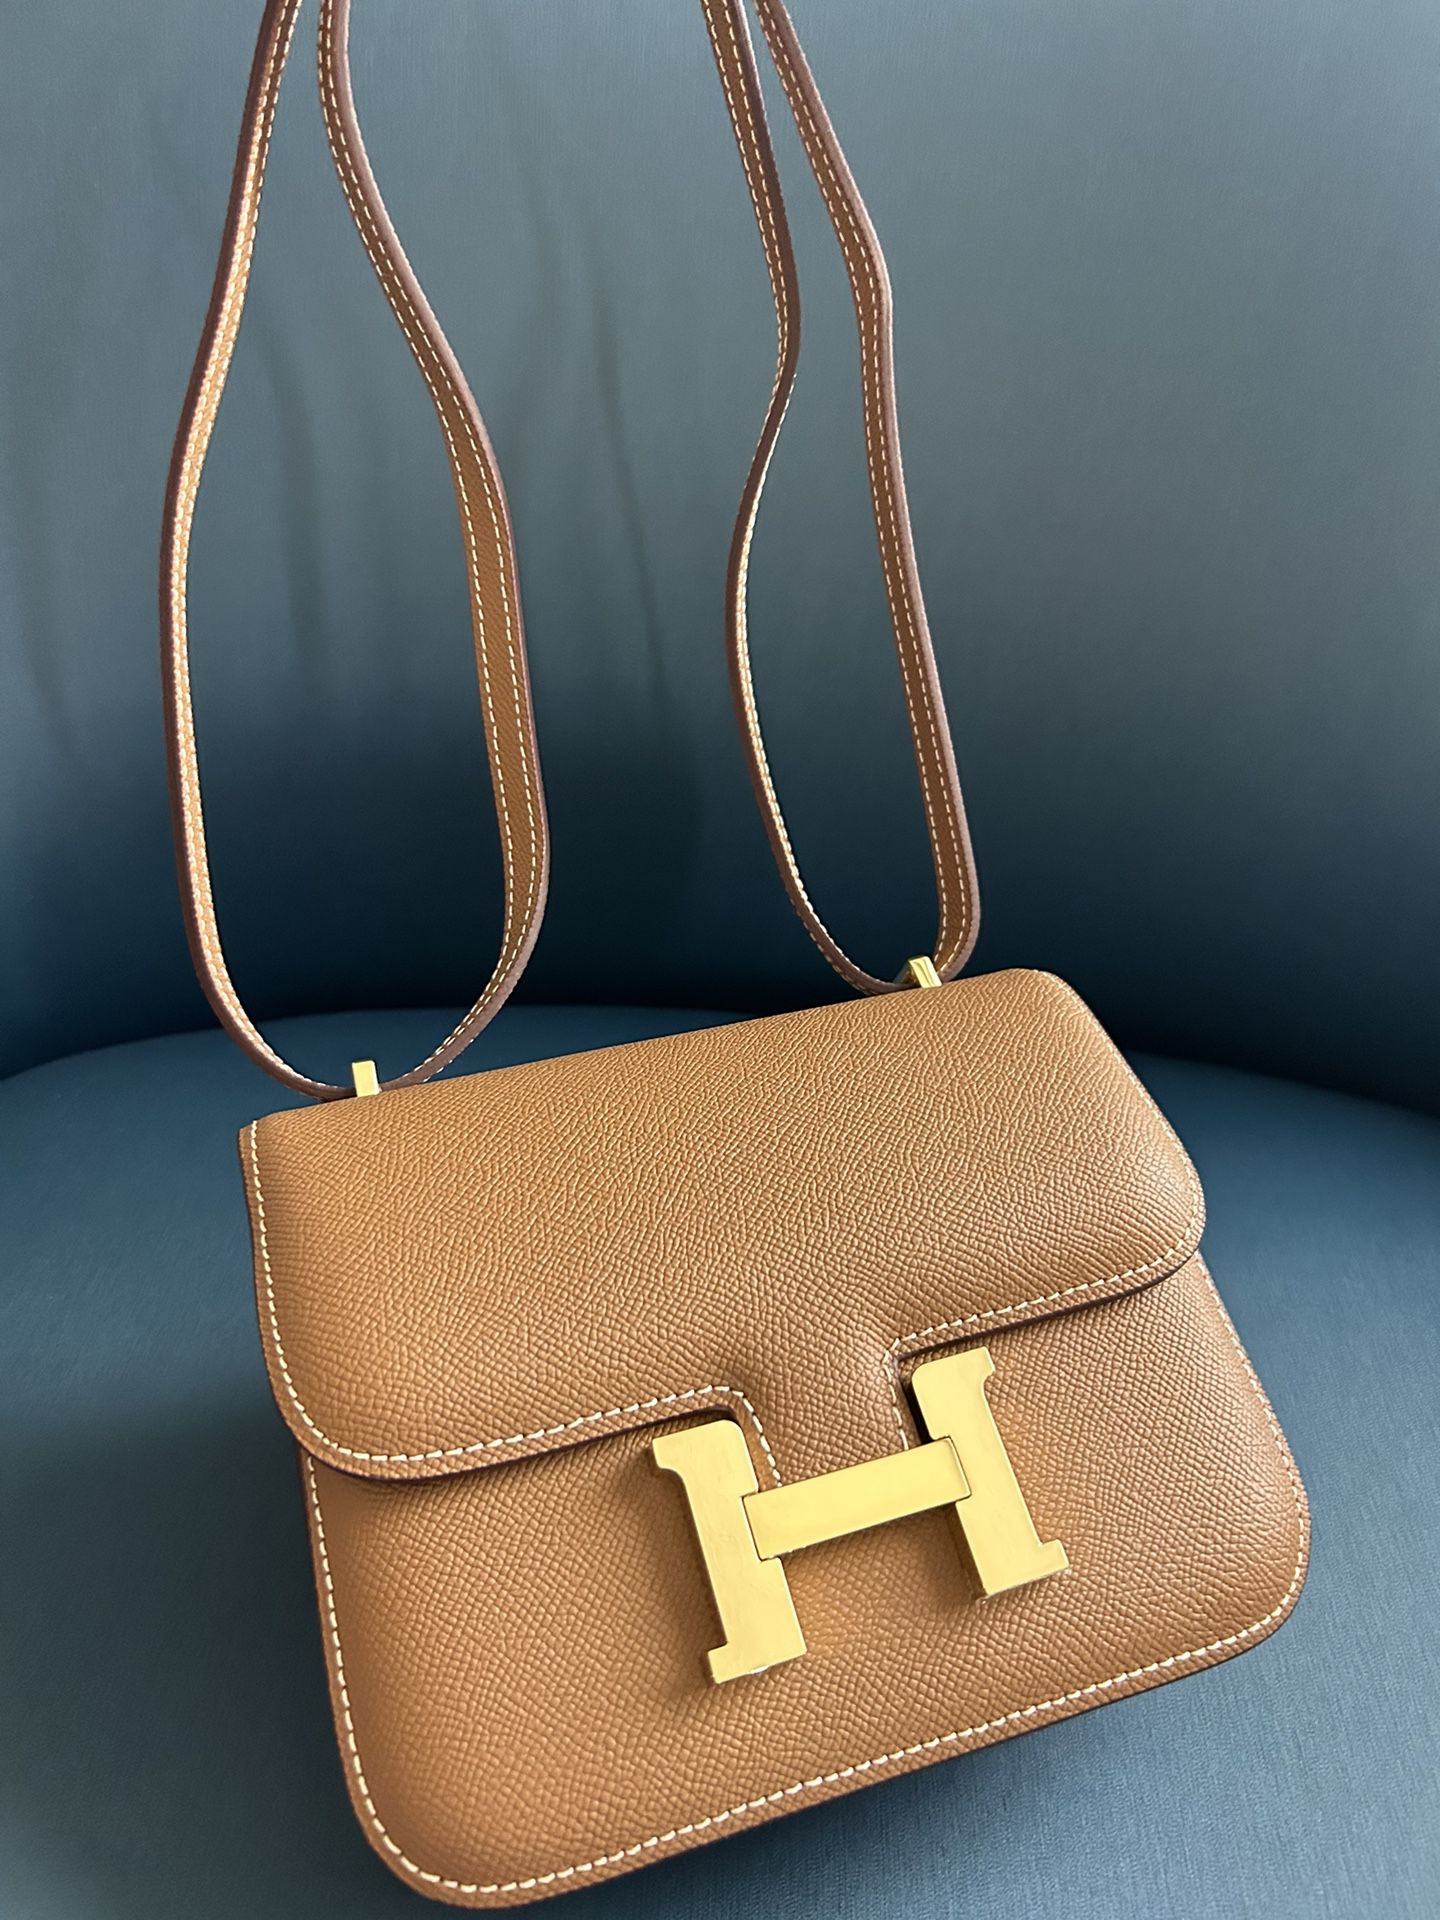 Hermes Constance Bag Adjustable Strap